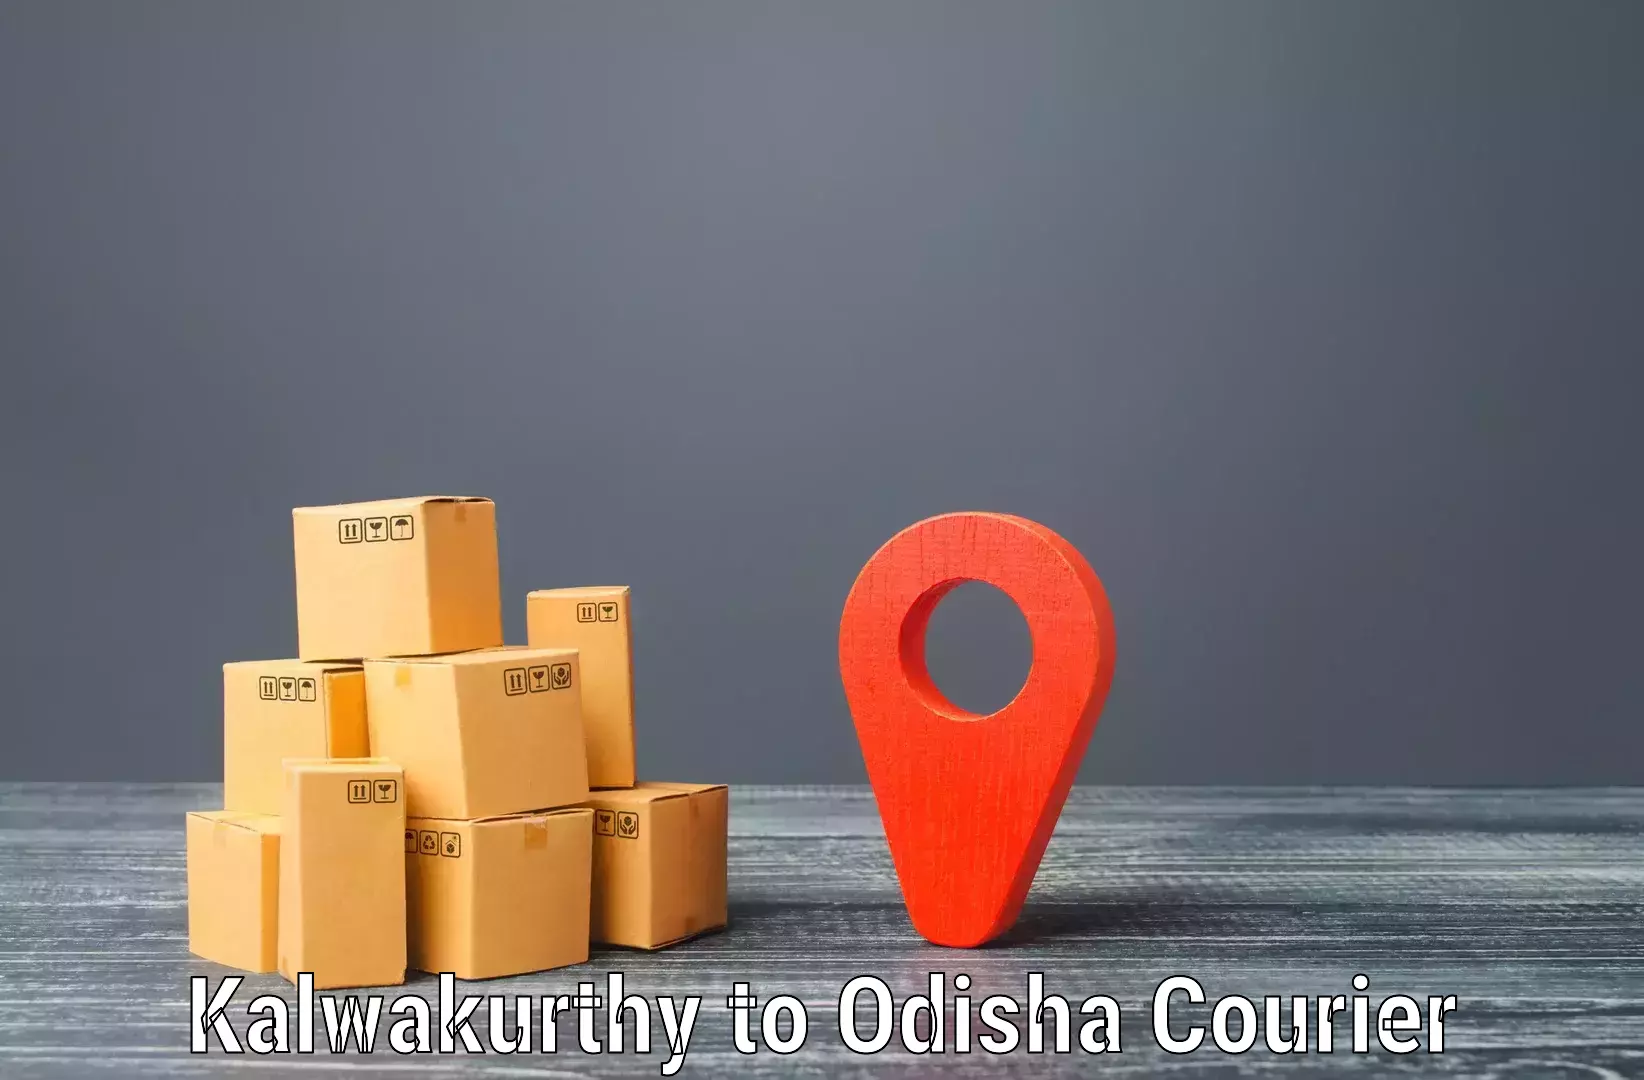 Sustainable shipping practices Kalwakurthy to Odisha